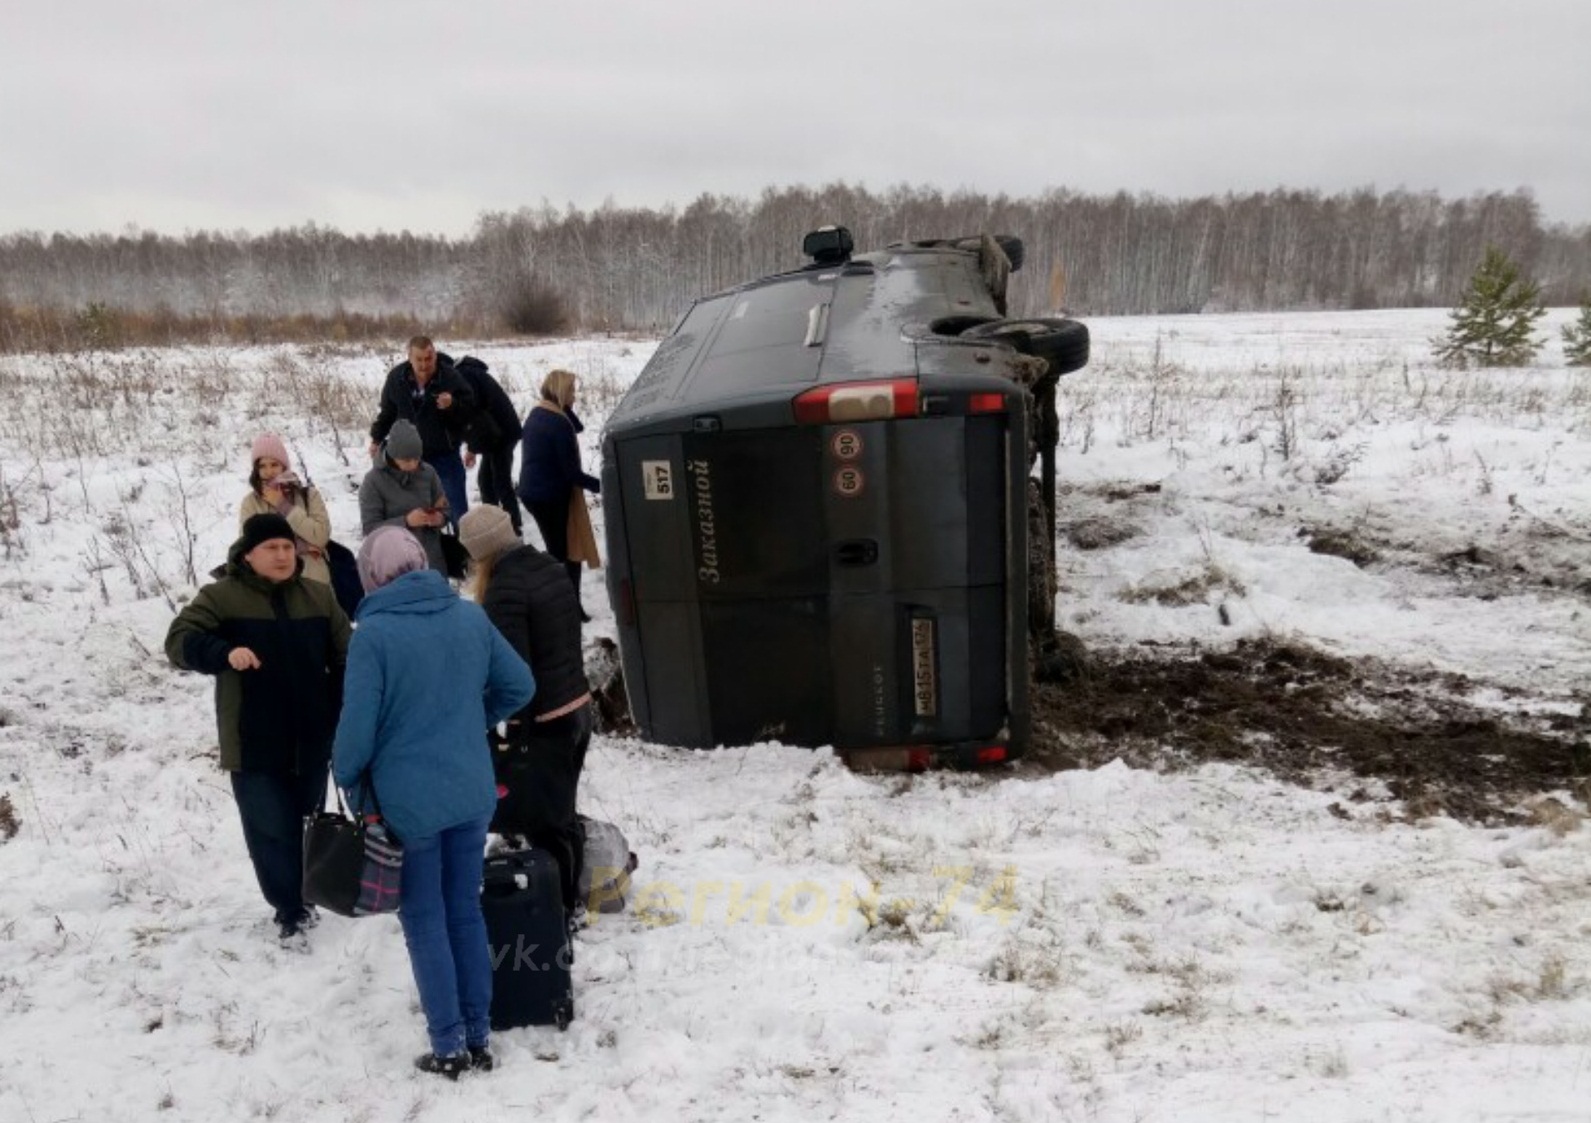 Двоих увезла скорая: что известно о пострадавших в ДТП с перевернувшимся автобусом под Челябинском